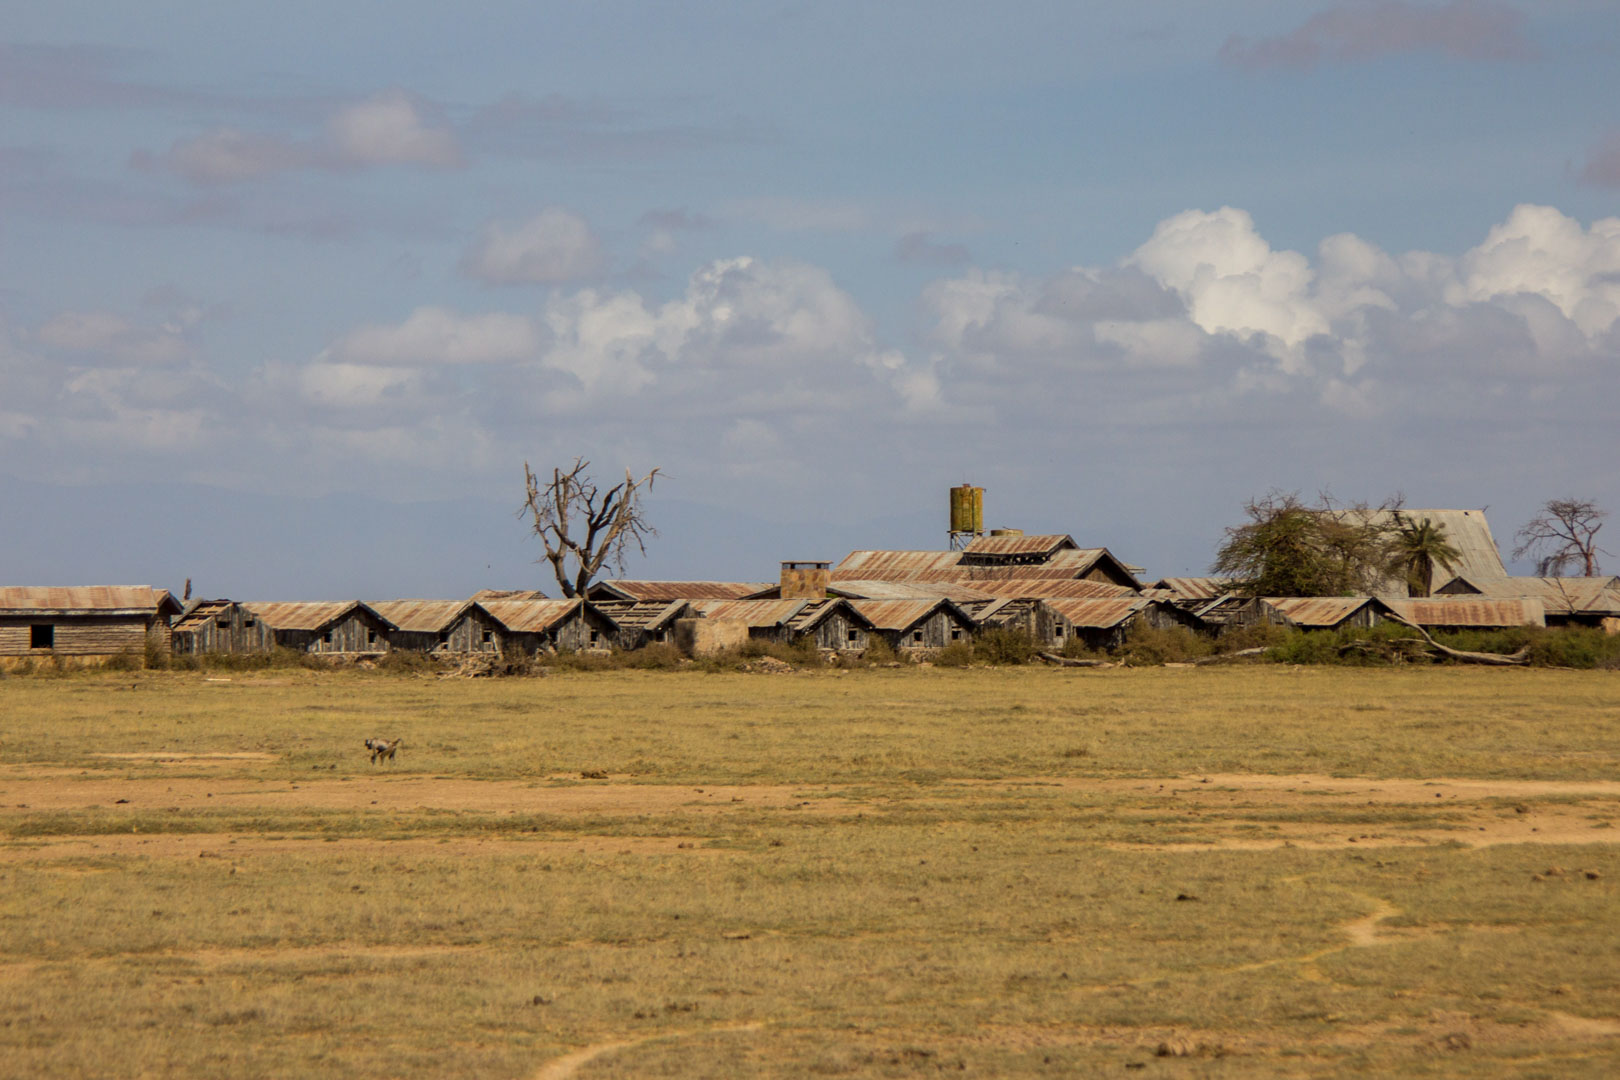 Hotel abandonado, Amboseli, Kenia